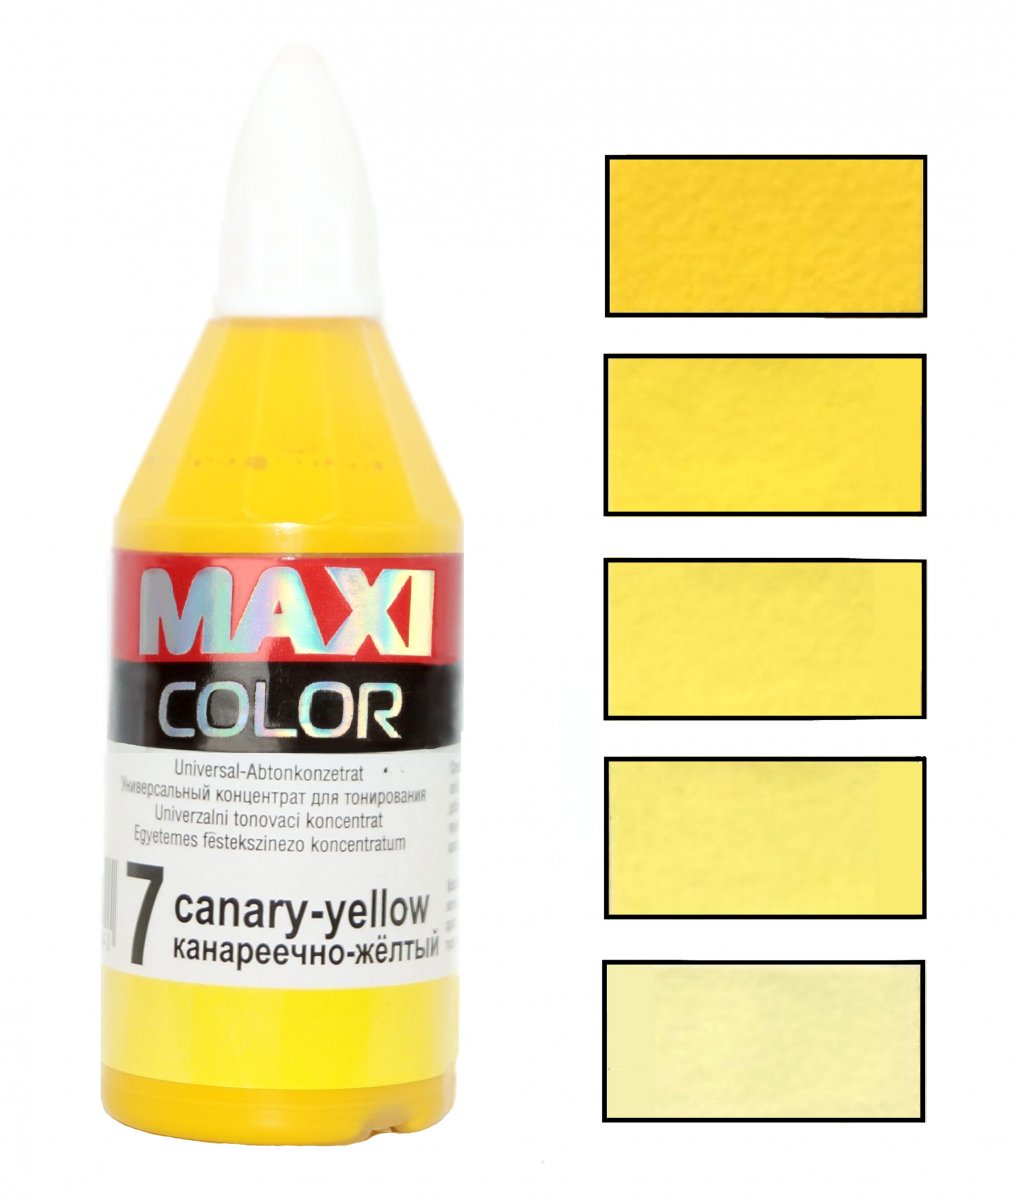 Canary - Yellow Канареечно - Желтый